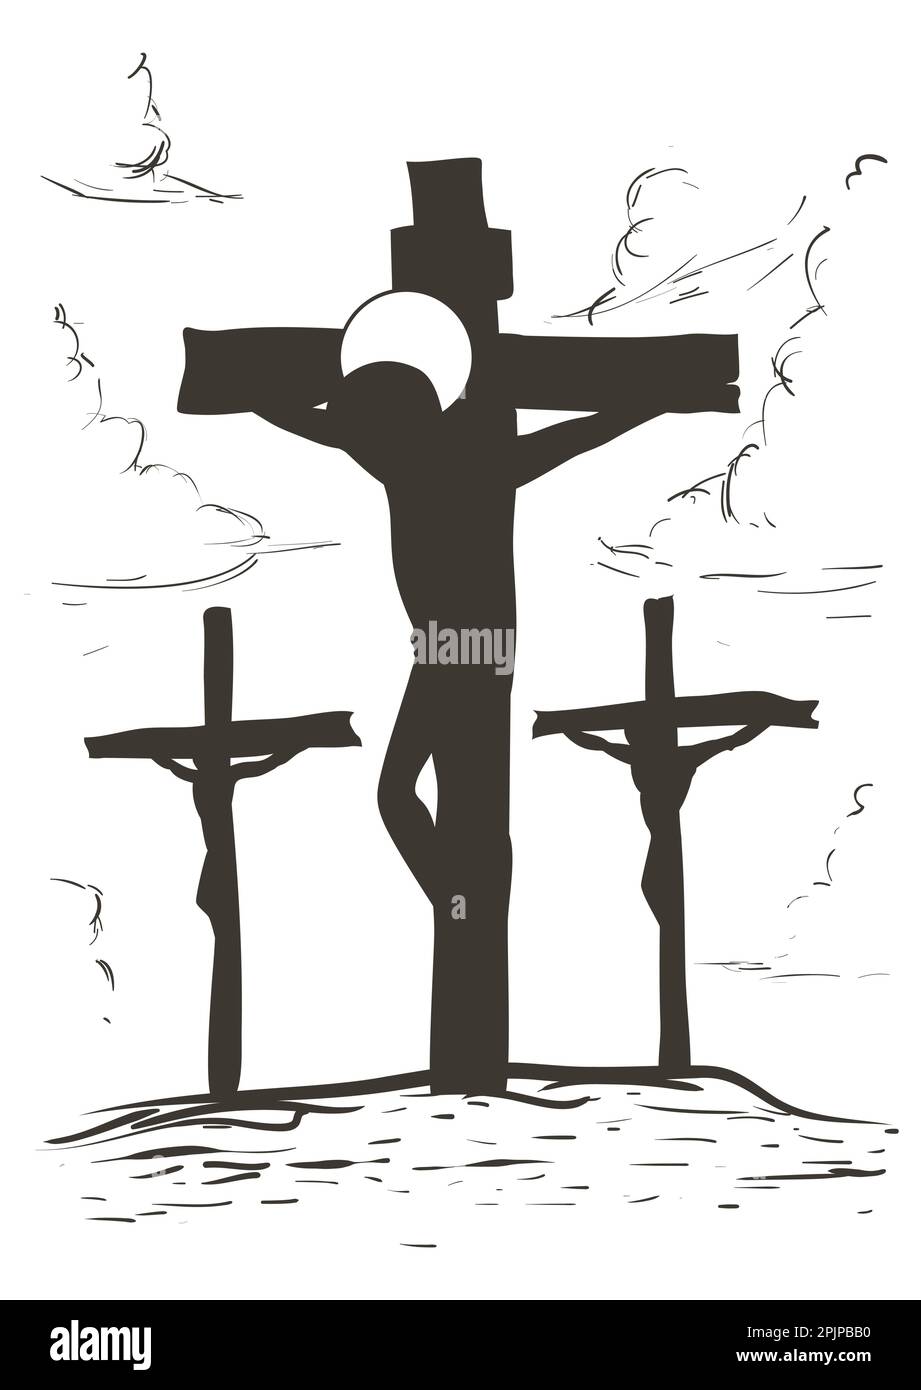 Zeichnung der Via Crucis für Station zwölf: Jesus stirbt am Kreuz zwischen zwei verurteilten Dieben. Stock Vektor